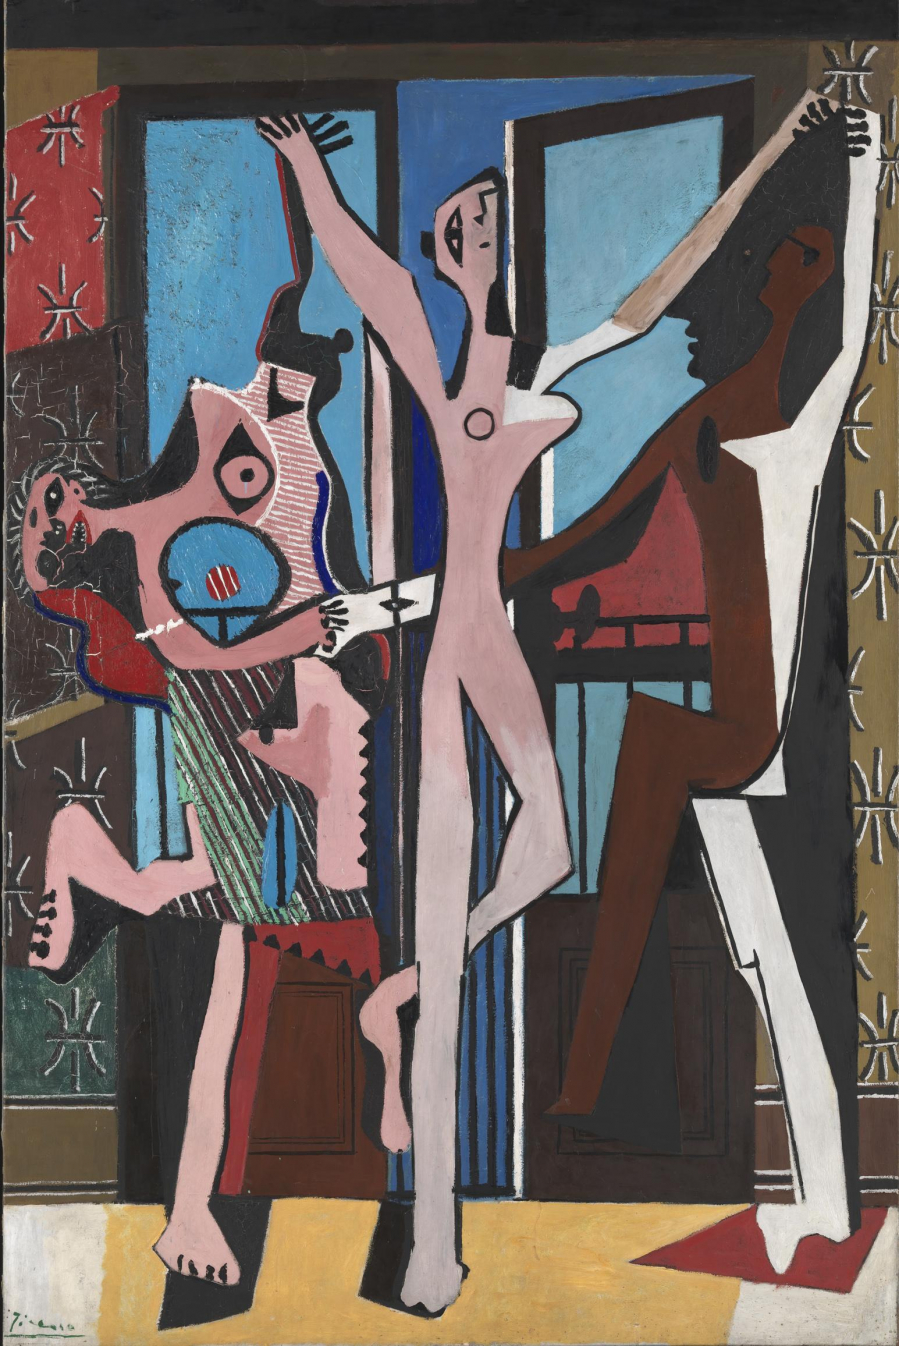 Ba vũ công (Pablo Picasso, 1925)